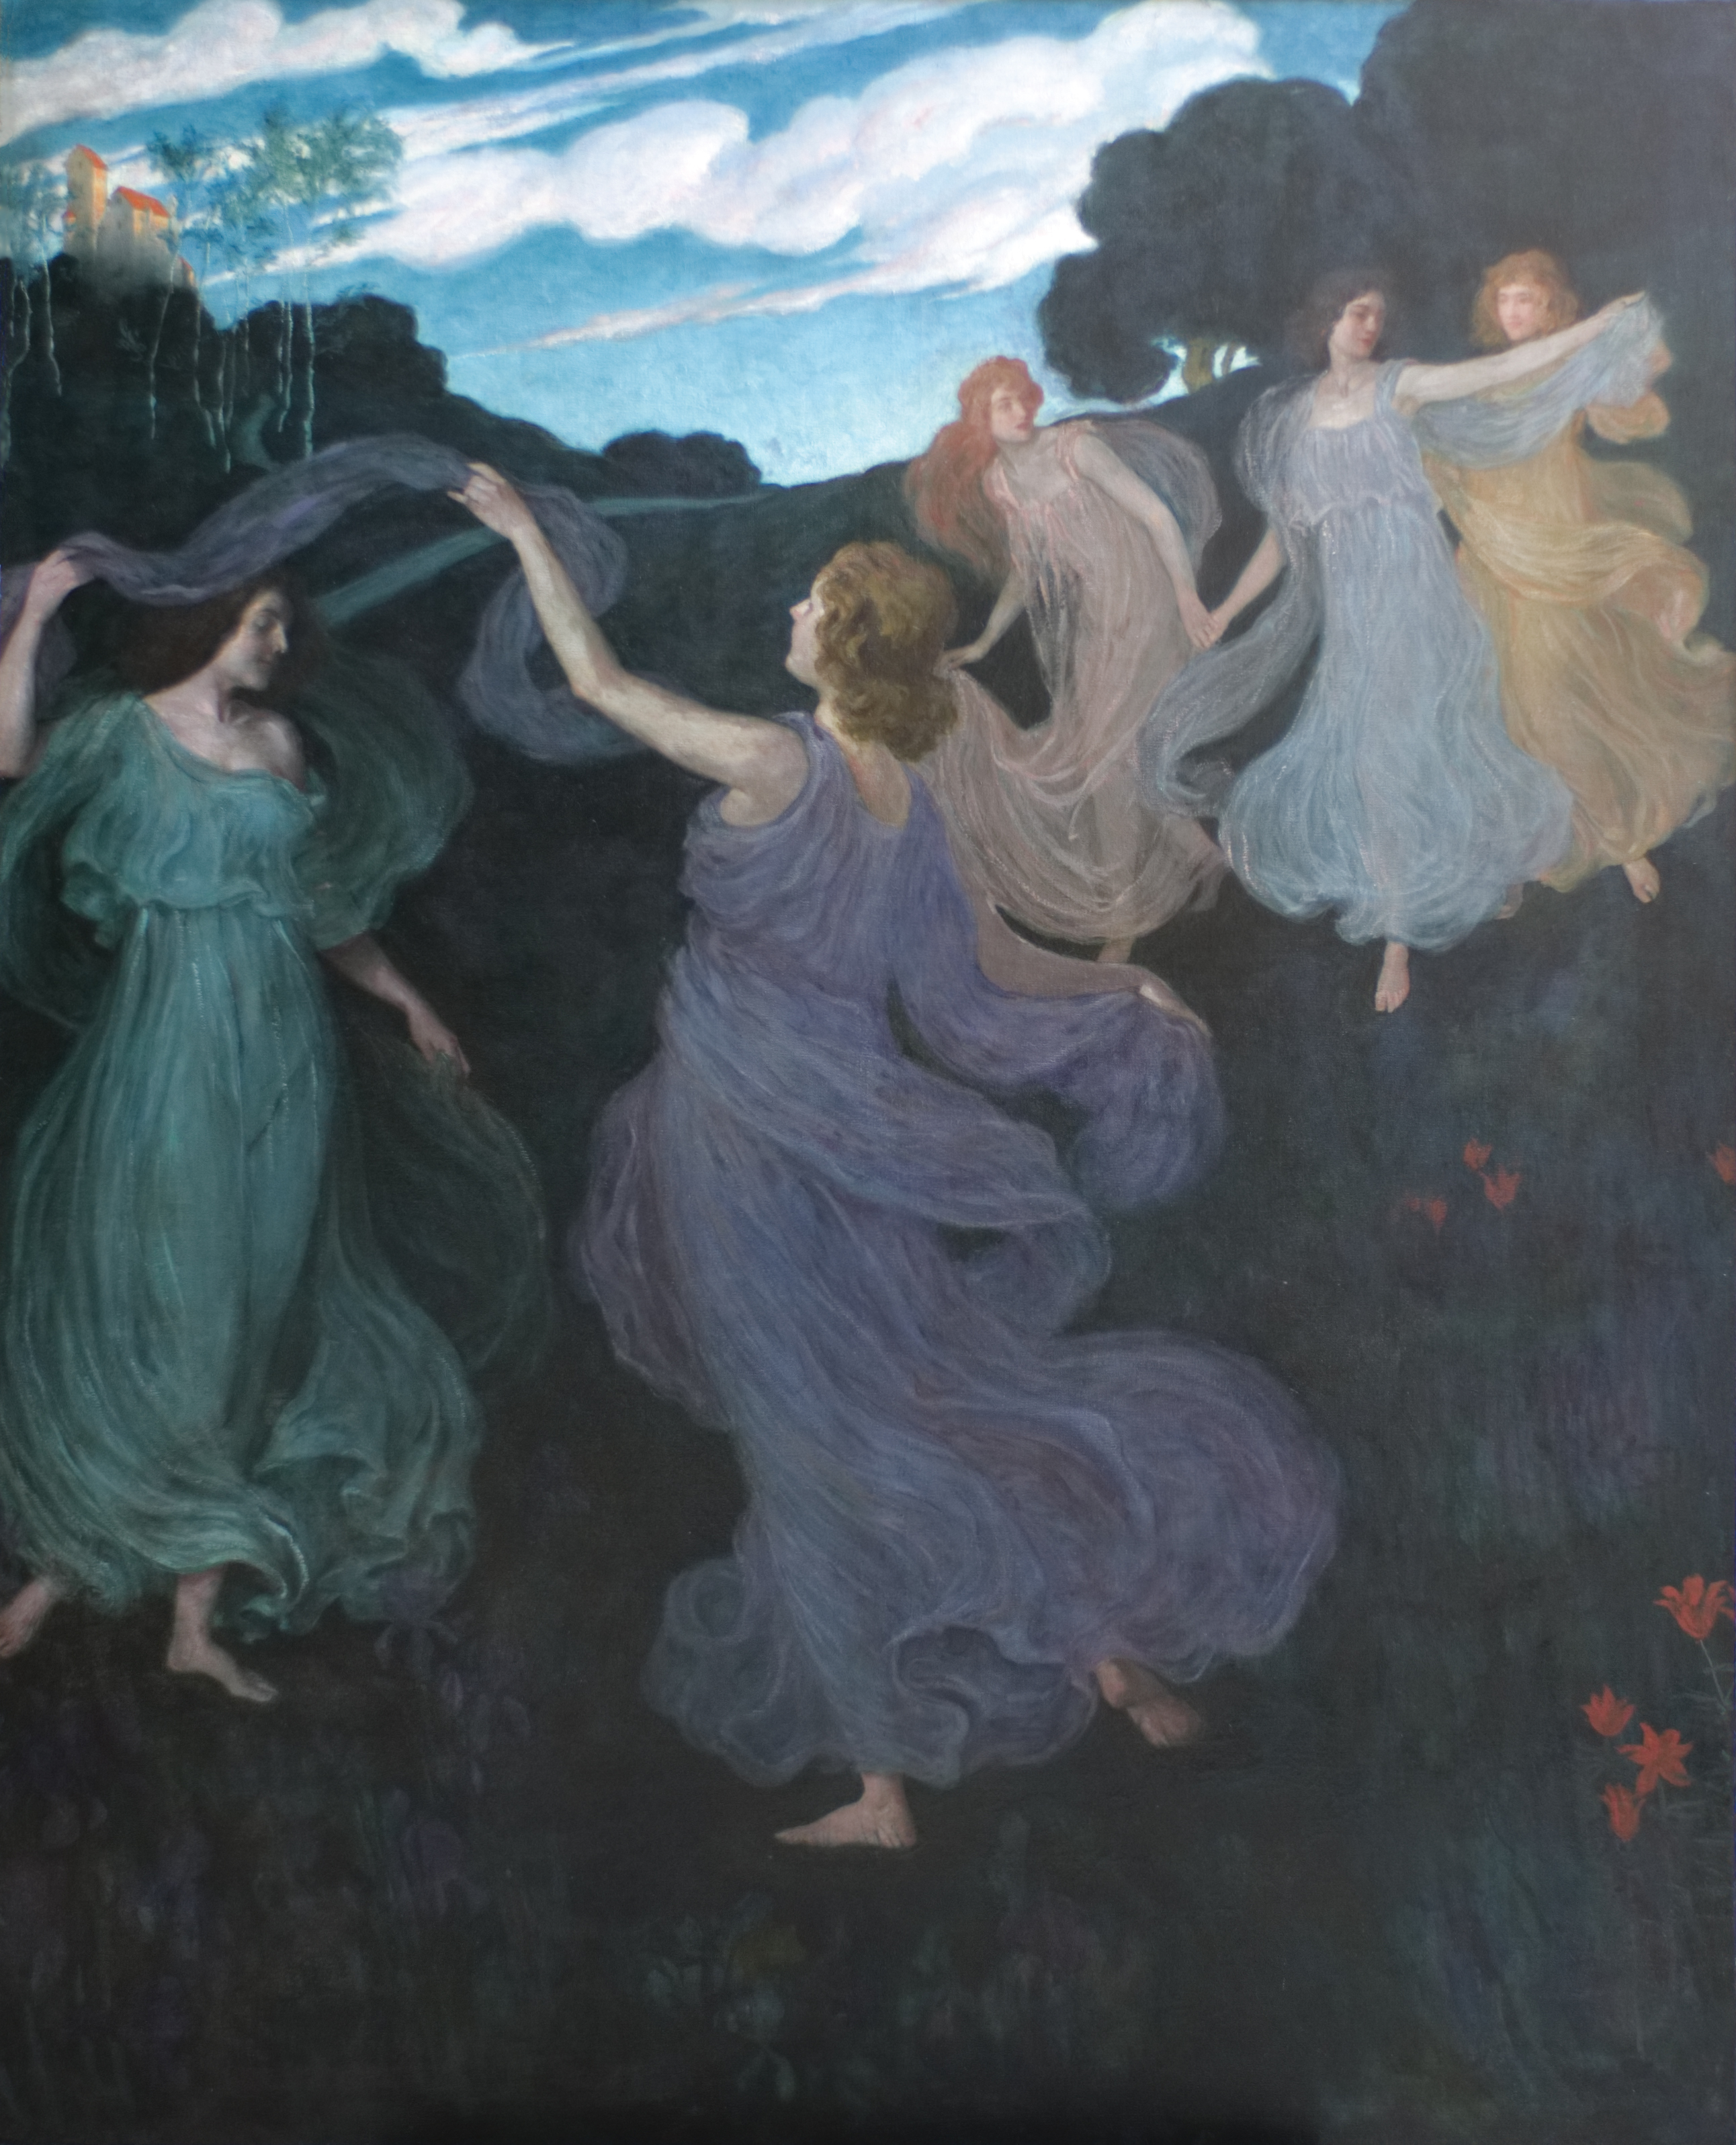 رقصة الجان - غرفة موسيقى شايد في فيينا by Josef Maria Auchentaller - 1899 